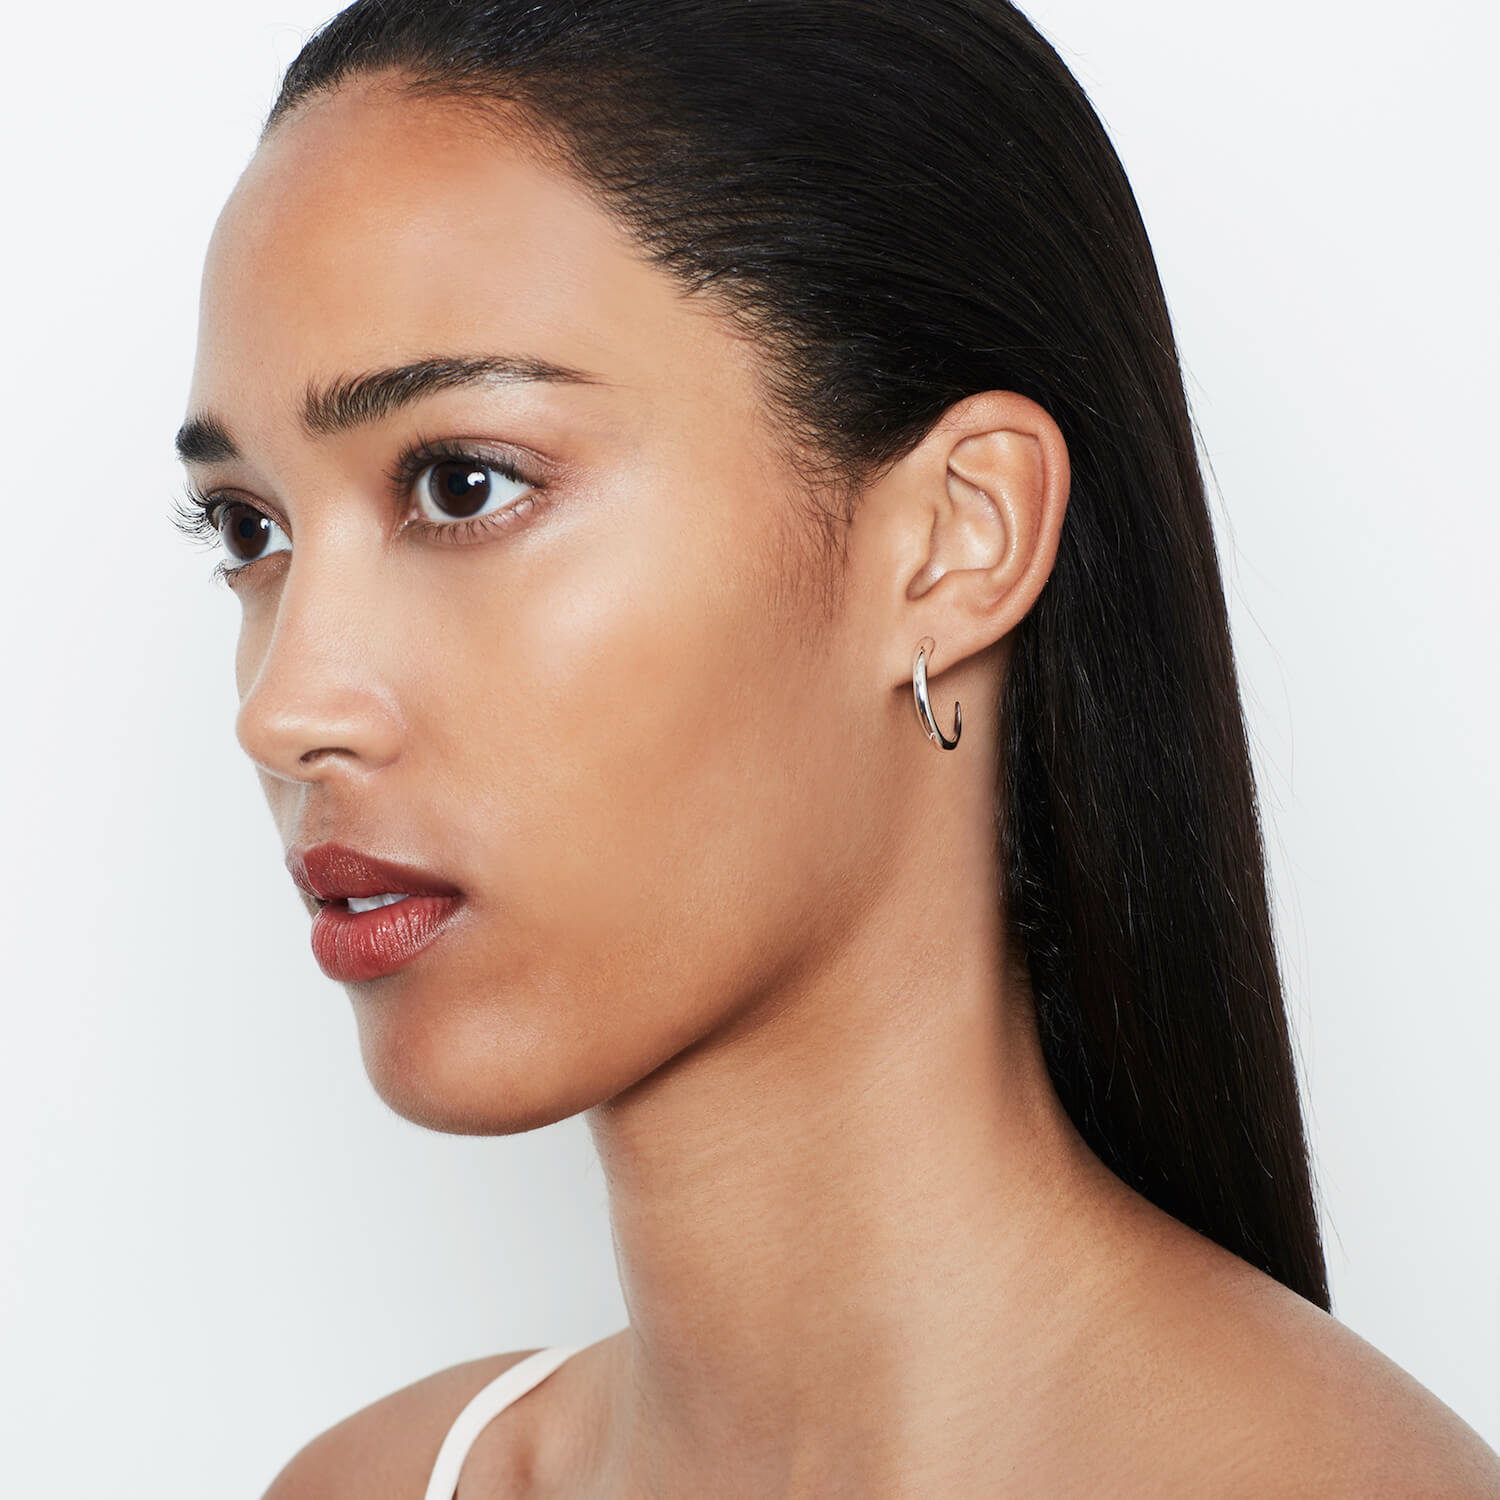 A model wearing silver Tusk Hoops earrings